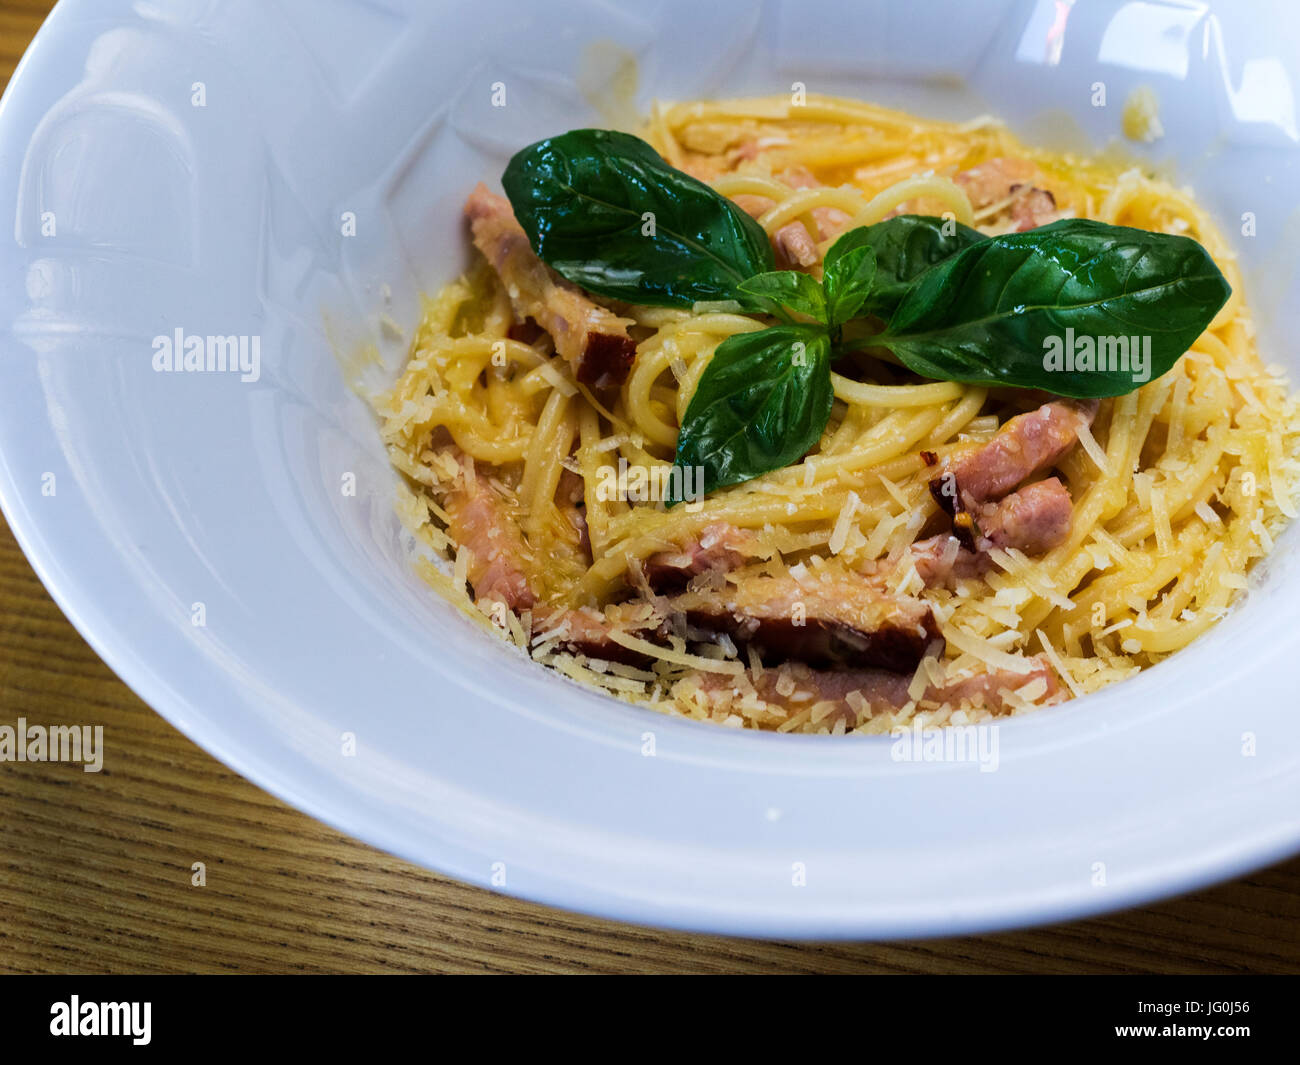 La cuisine italienne : Pasta alla carbonara Spaghetti, bacon, sauce au poivre noir, blanc Banque D'Images